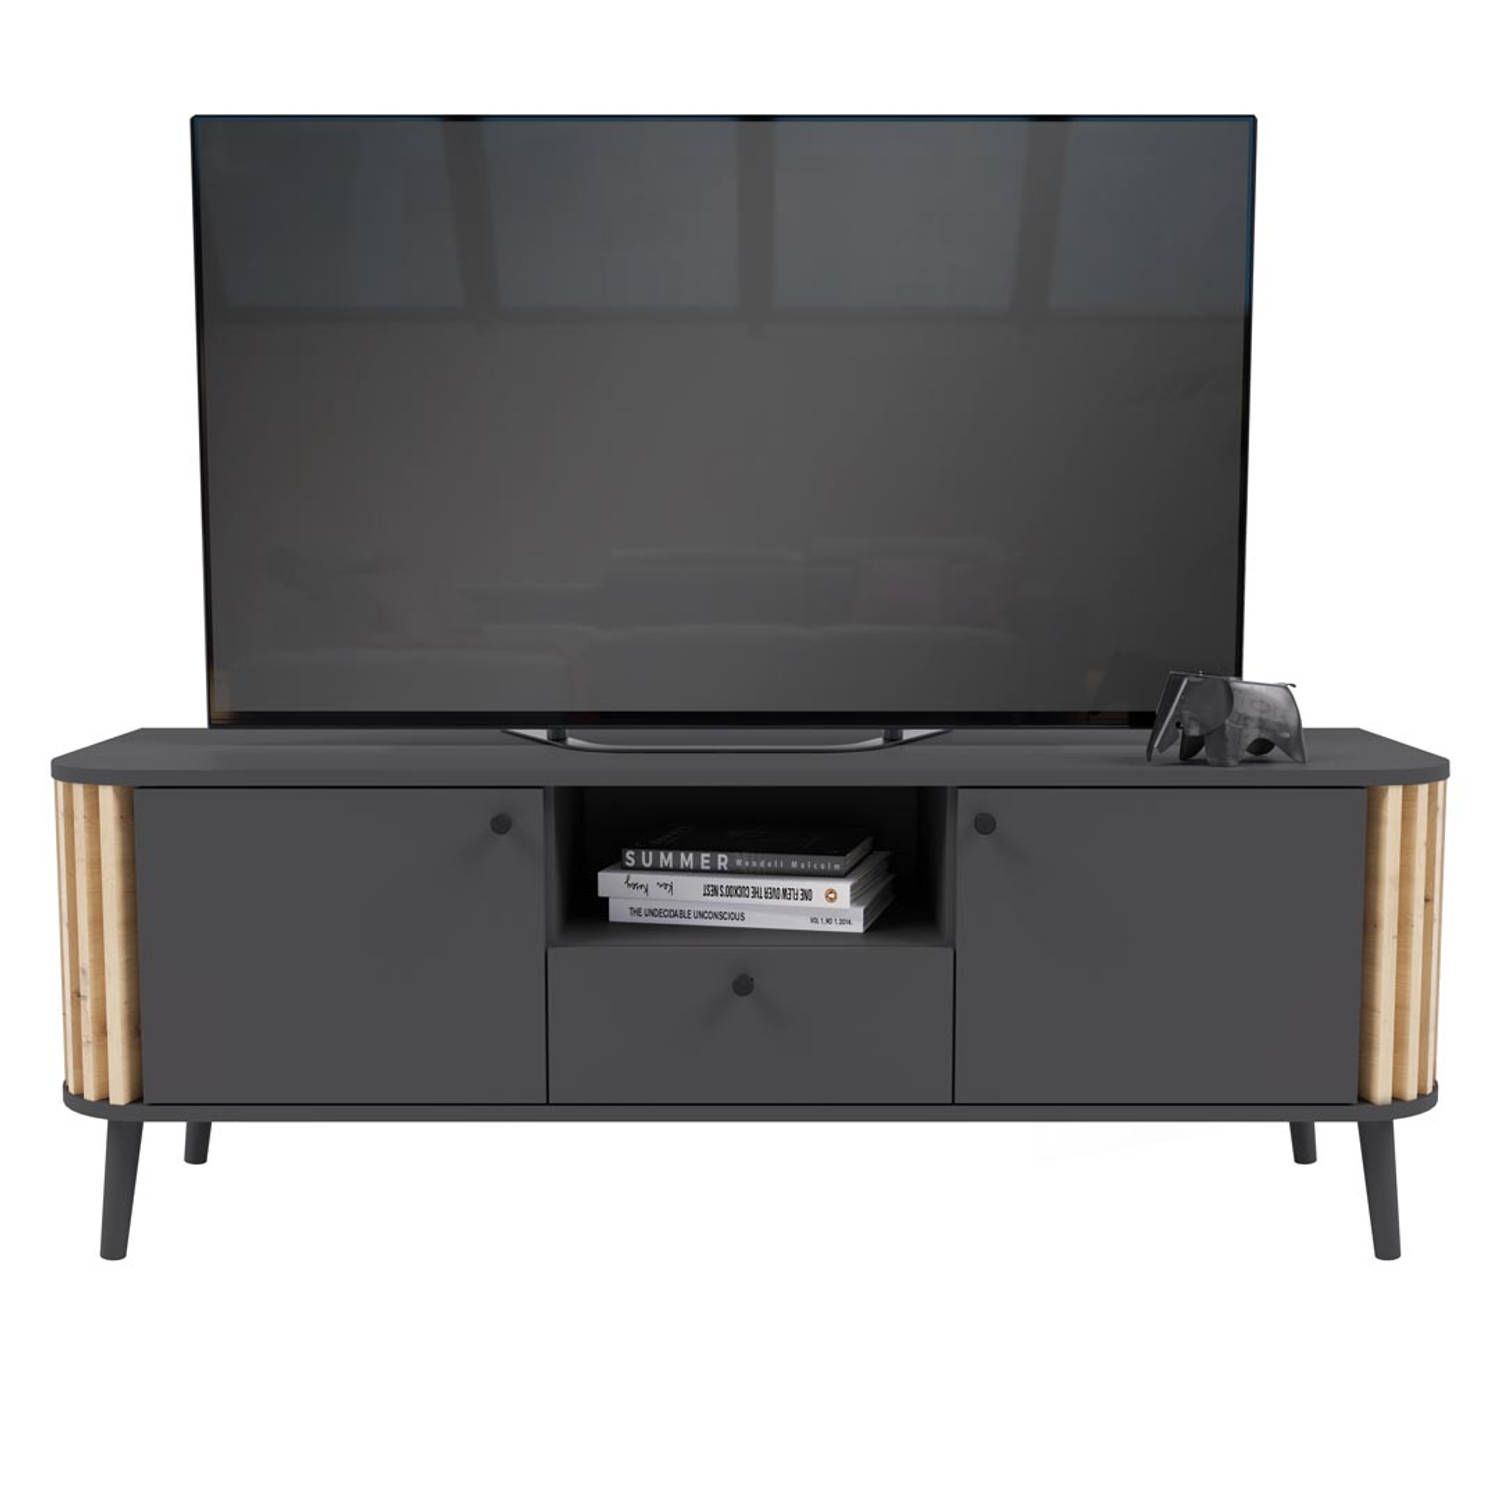 Pure TV-meubel 2 deuren, 1 lade, 1 plank grijs,eik decor.